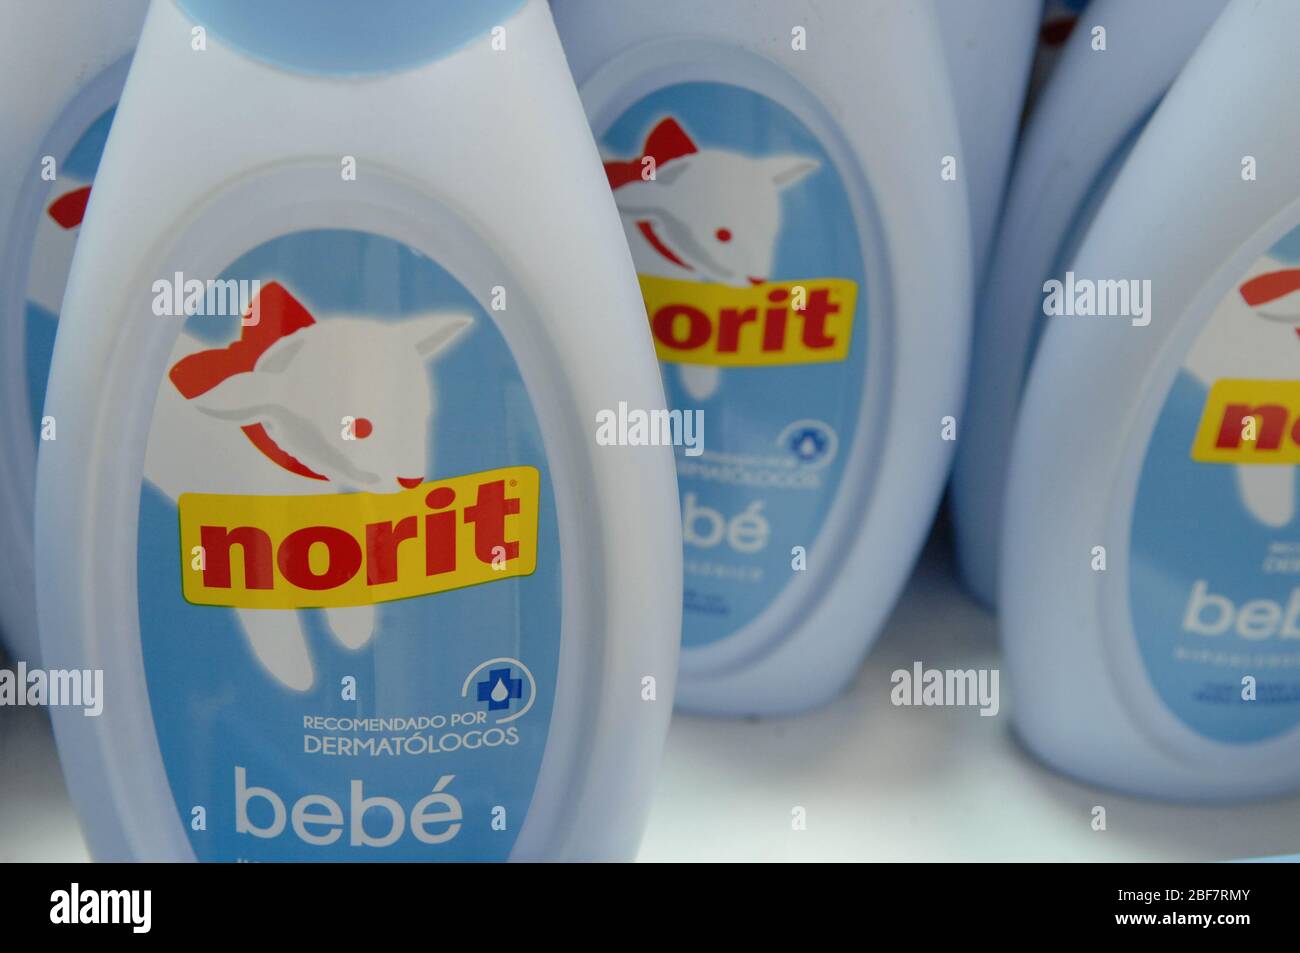 MADRID, España - 9 de abril de 2019: detergente NORIT botella junto a la  lavadora. EDITORIAL ilustrativos Fotografía de stock - Alamy